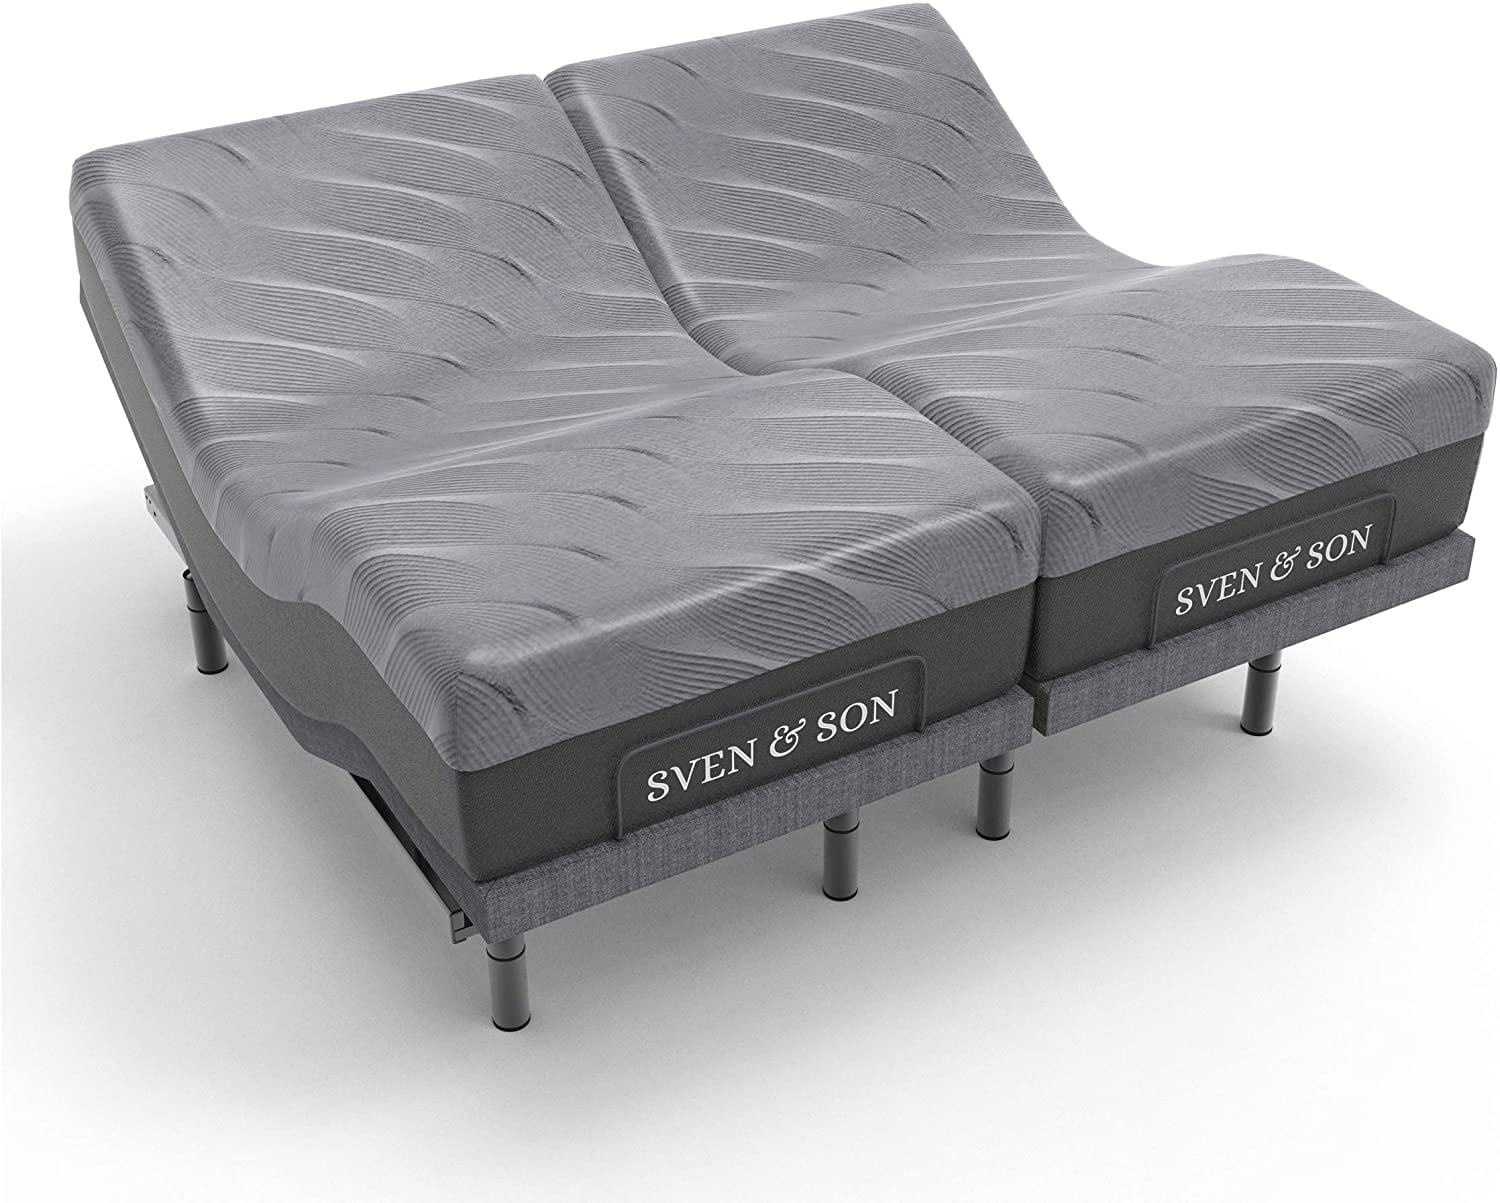 Sven Son Split King Adjustable Bed, Zero G Bed Frame